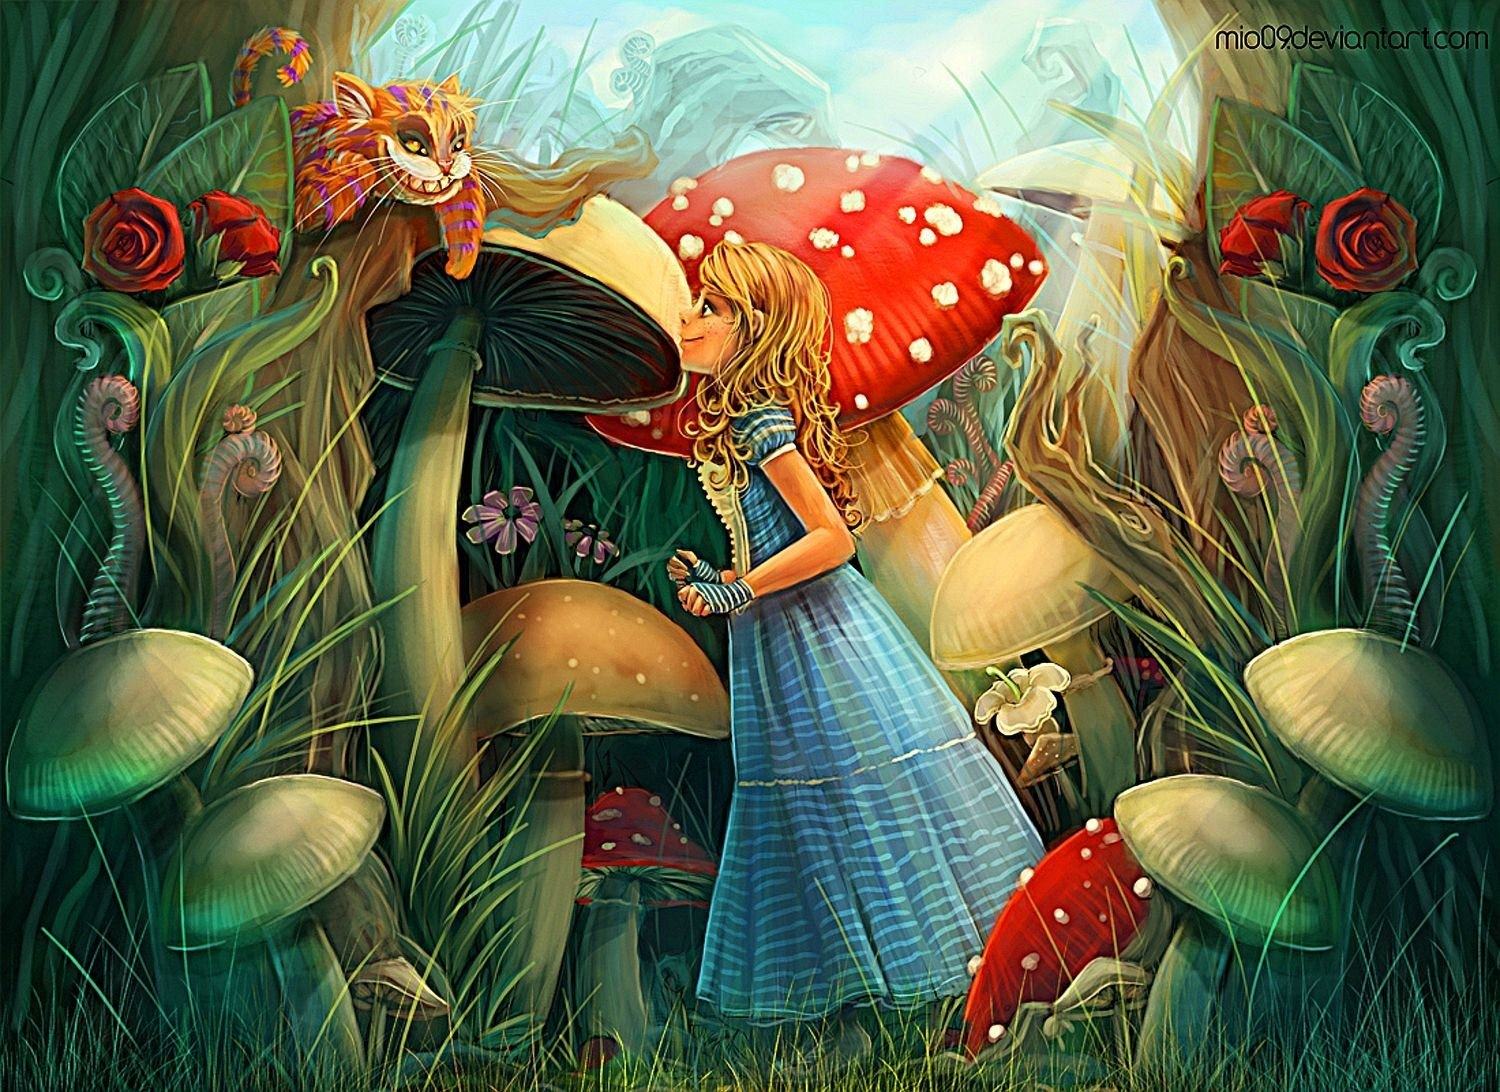 Сказка размышления. Алиса в стране чудес. Алиса в стране чудес Алиса. Иллюстрация к сказке Алиса в стране чудес. Иллюстрация из сказки Алиса в стране чудес.